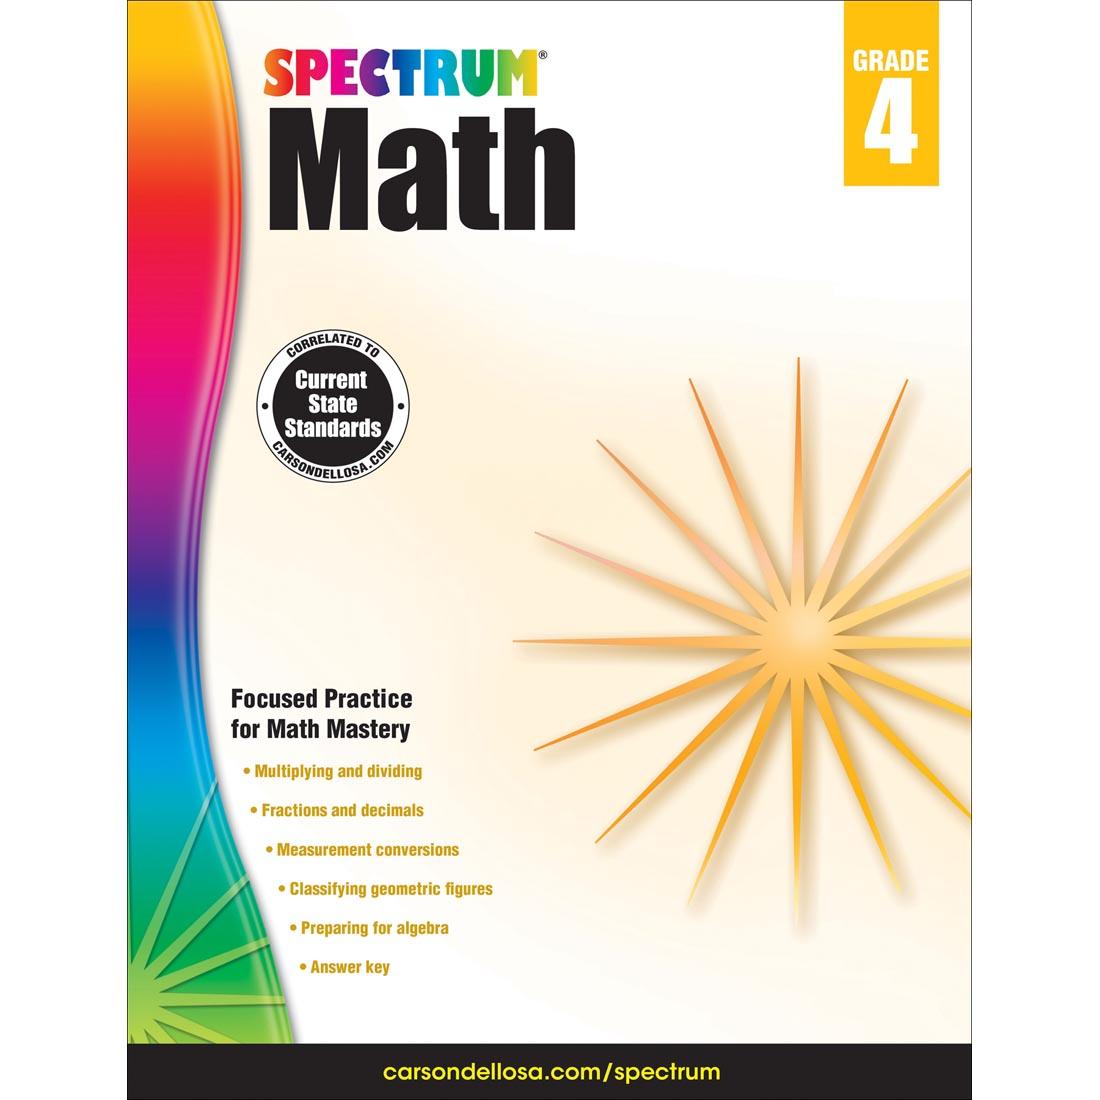 Spectrum Math Book by Carson Dellosa Grade 4